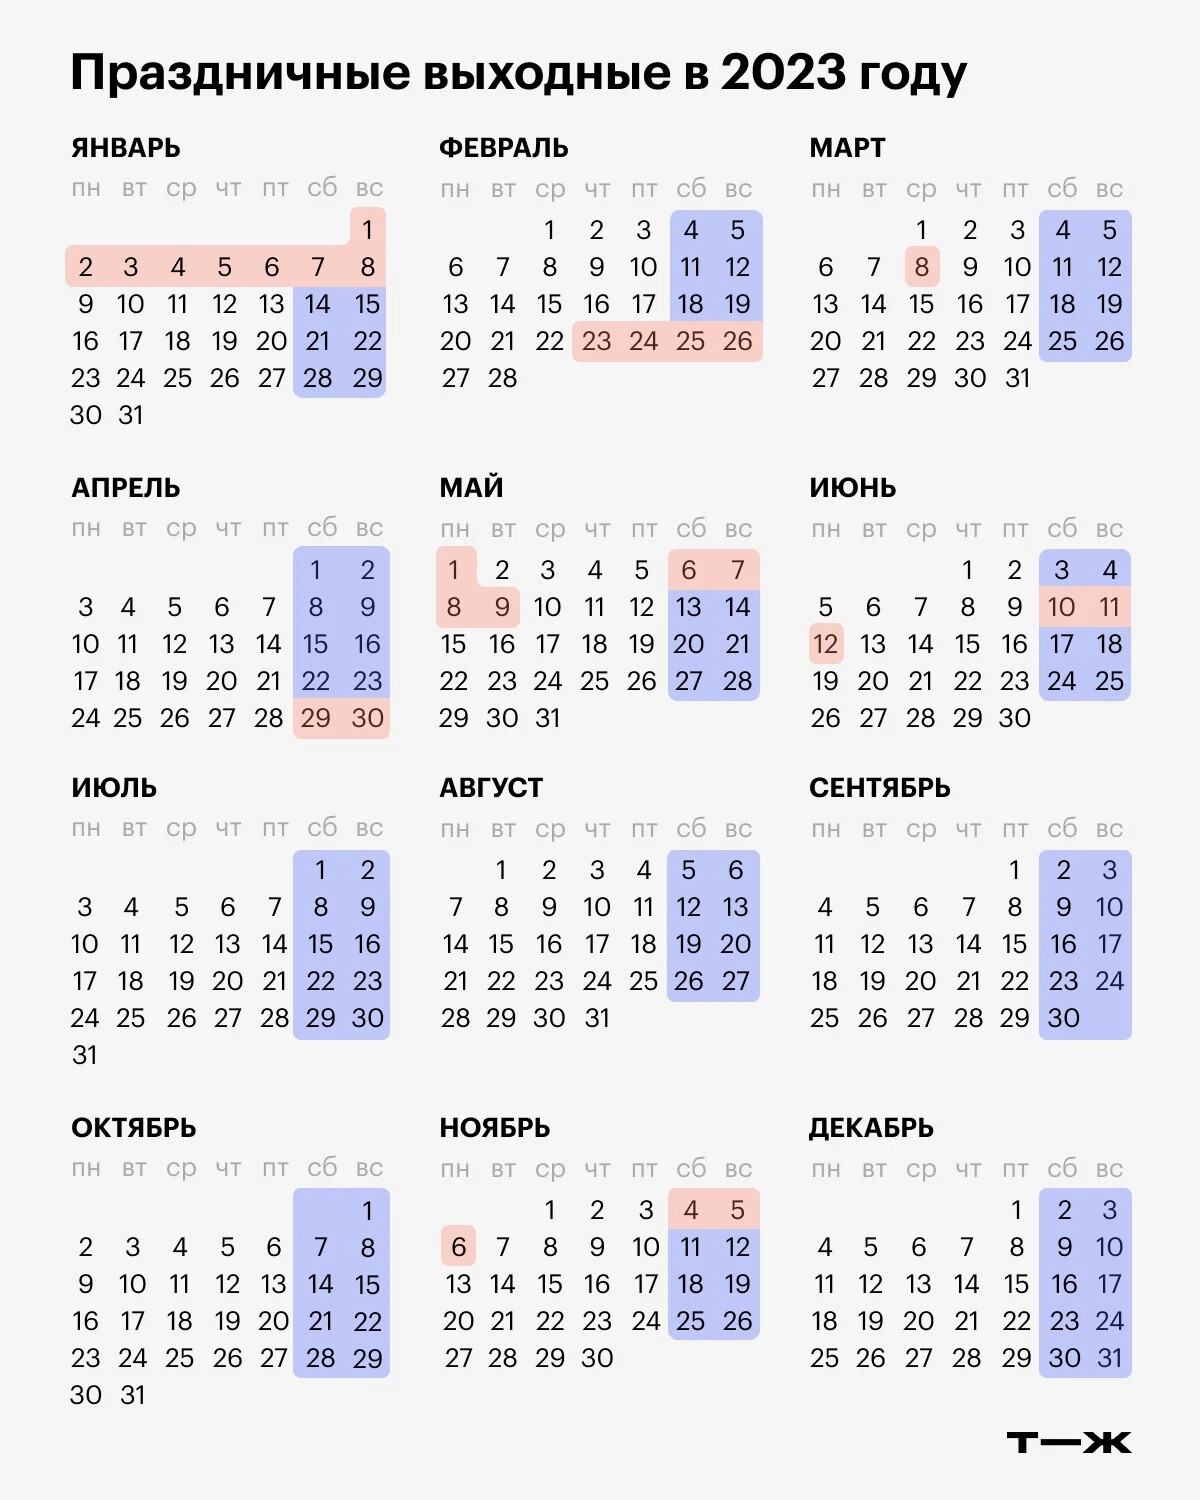 Какие праздники апреле 2023 в россии. Календарь праздничных дней 2023 года в России. Производственный календарь на 2023 год с праздниками РФ. Календарь праздников 2023 года в России нерабочие дни. Выходные и праздники в 2023 году в России нерабочие дни.